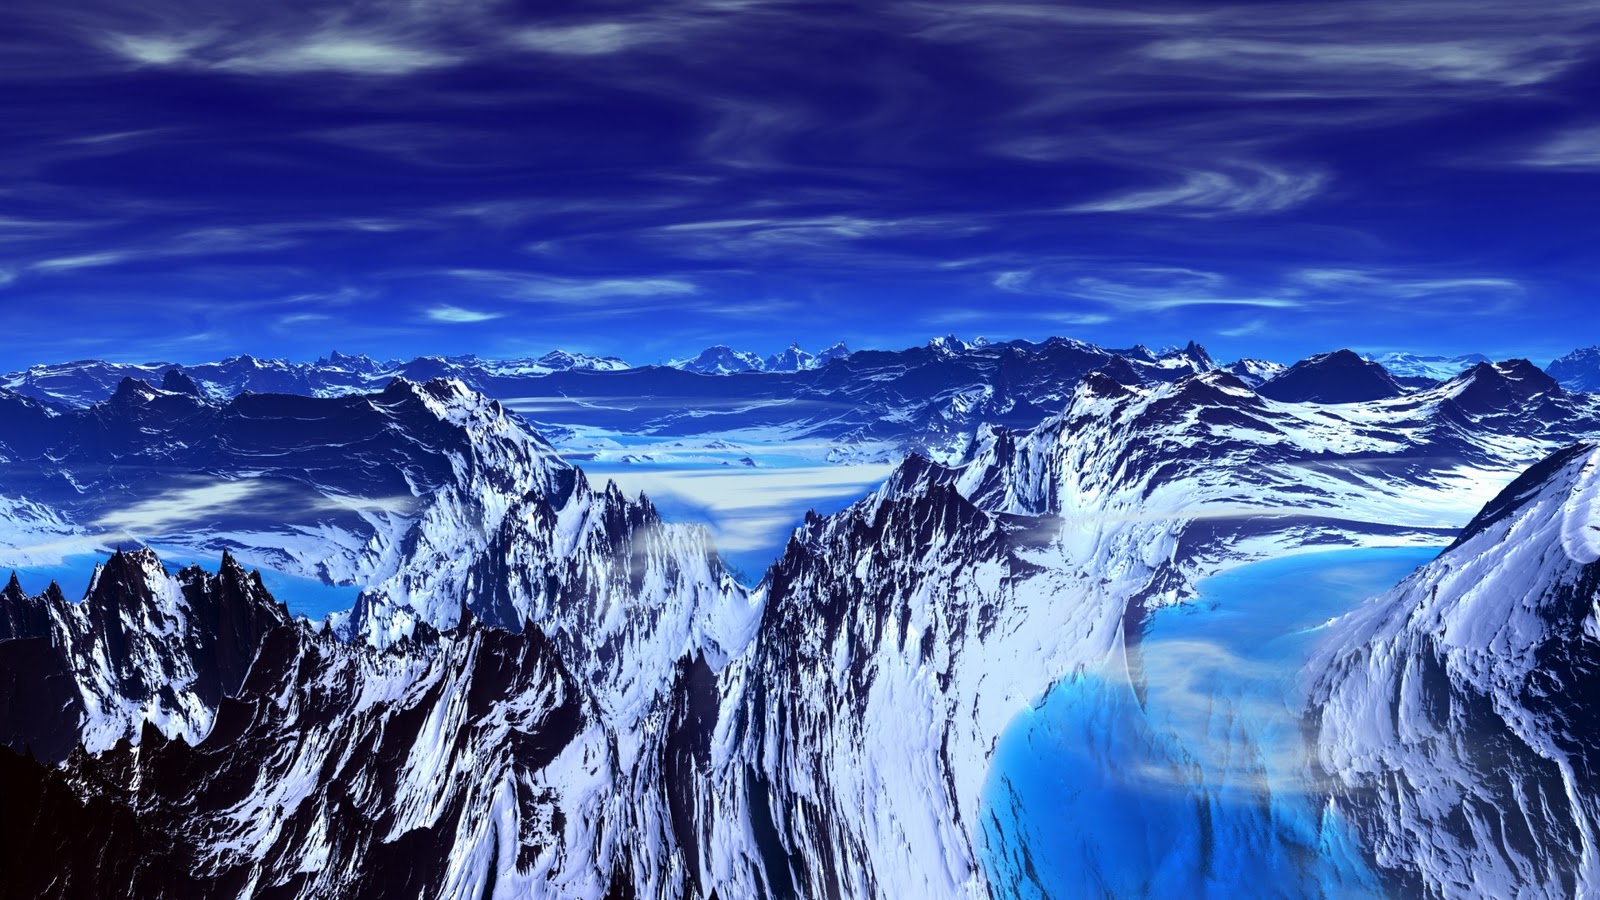  blue mountain lake wallpaper wallpaper me blue mountain desktop 1600x900